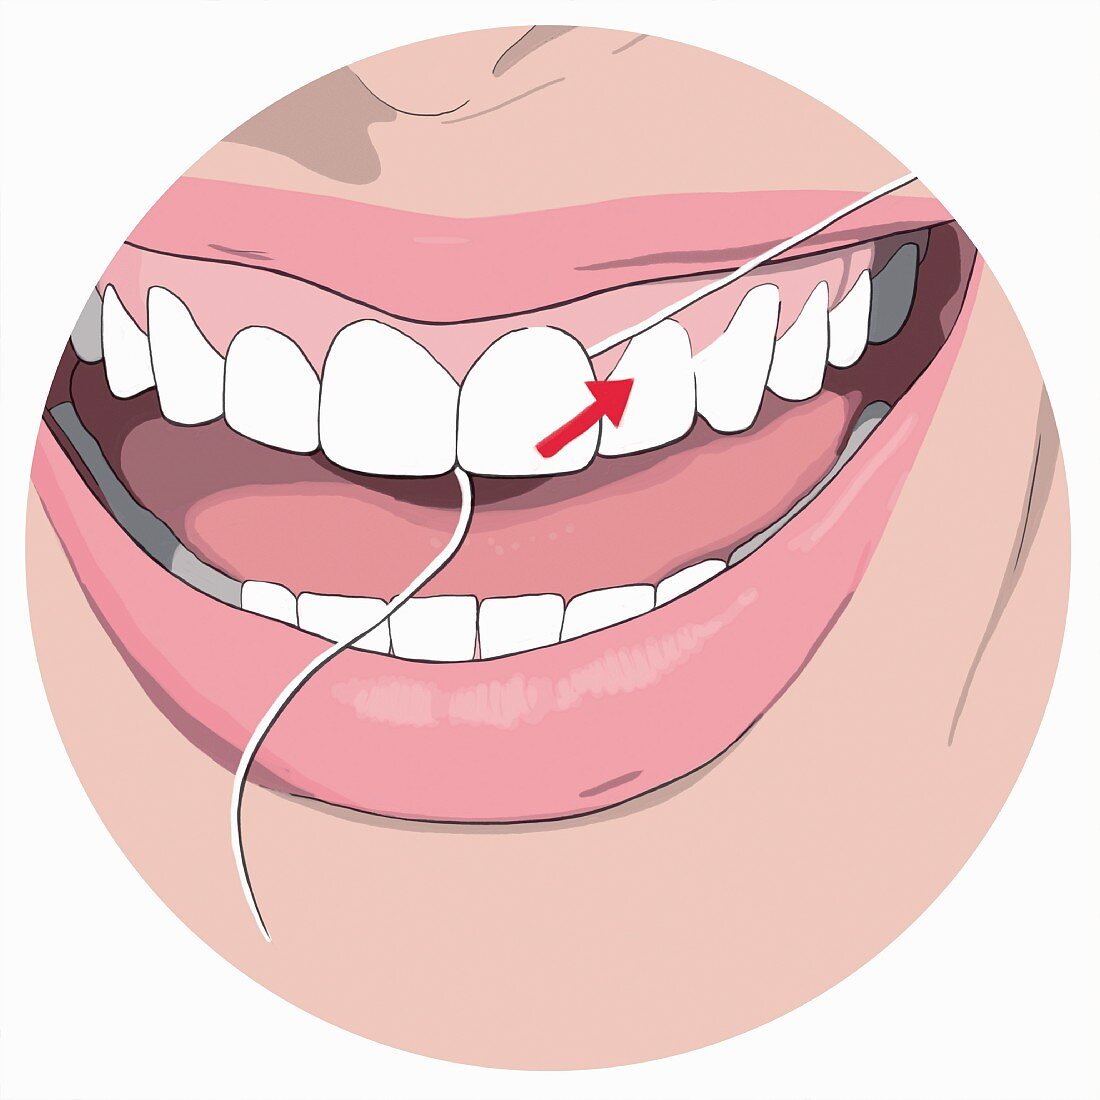 Zahnseide benutzen, Schritt 4: Innere Seite des Fadens loslassen und nach außen ziehen